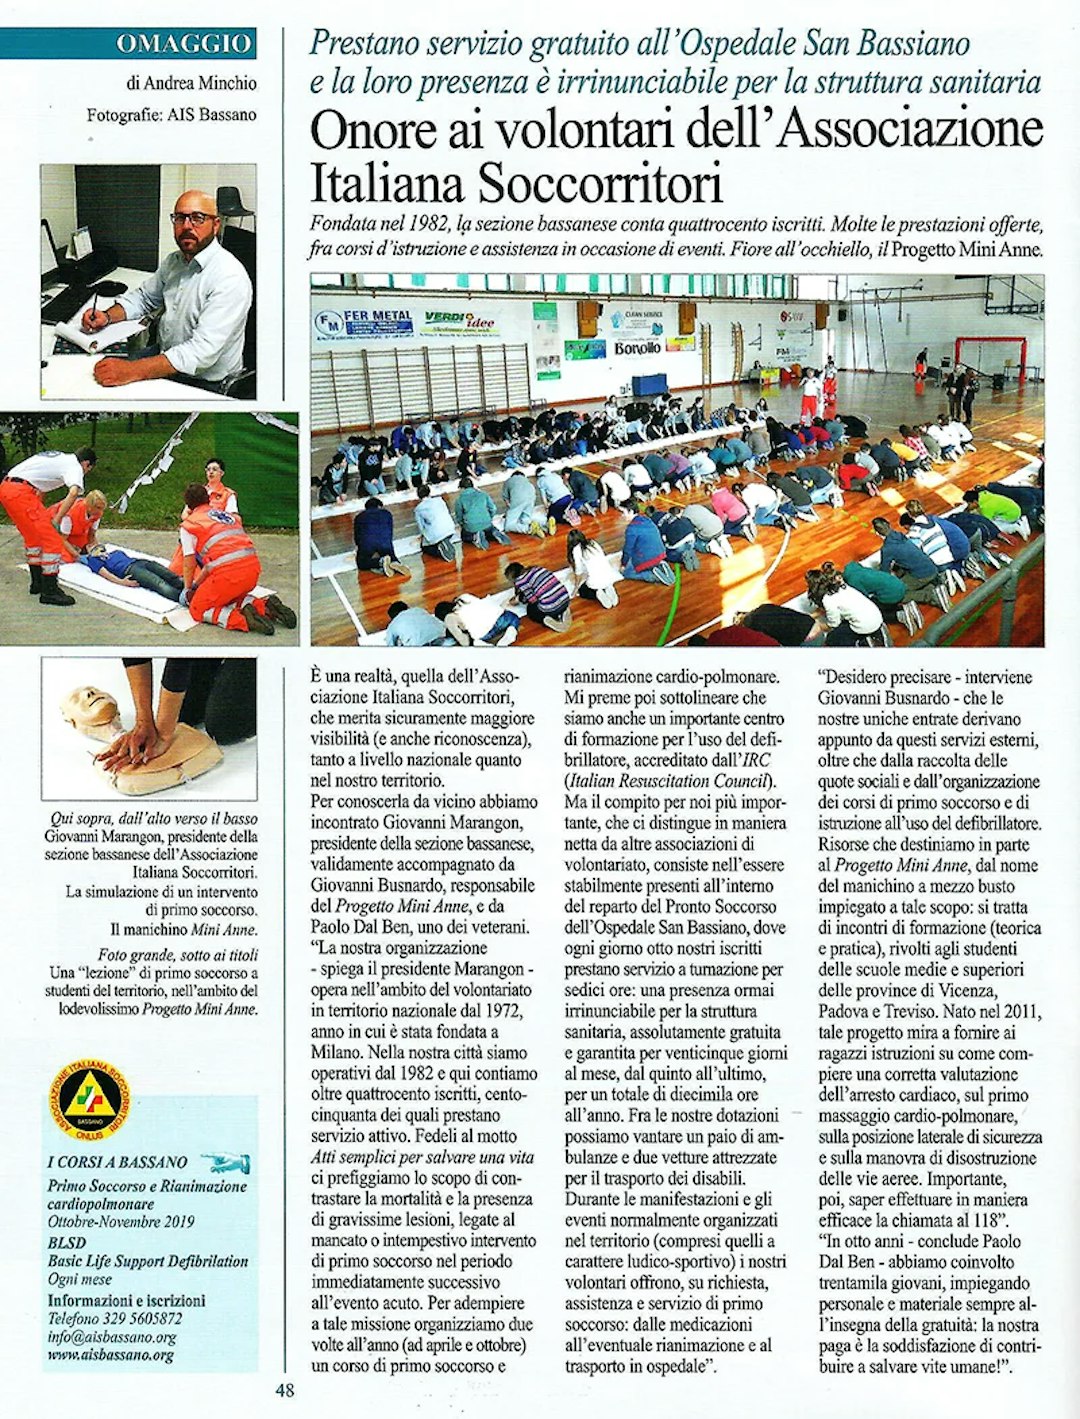 Articolo di giornale AIS Bassano dettagli • News • Associazione Italiana Soccorritori Bassano del Grappa